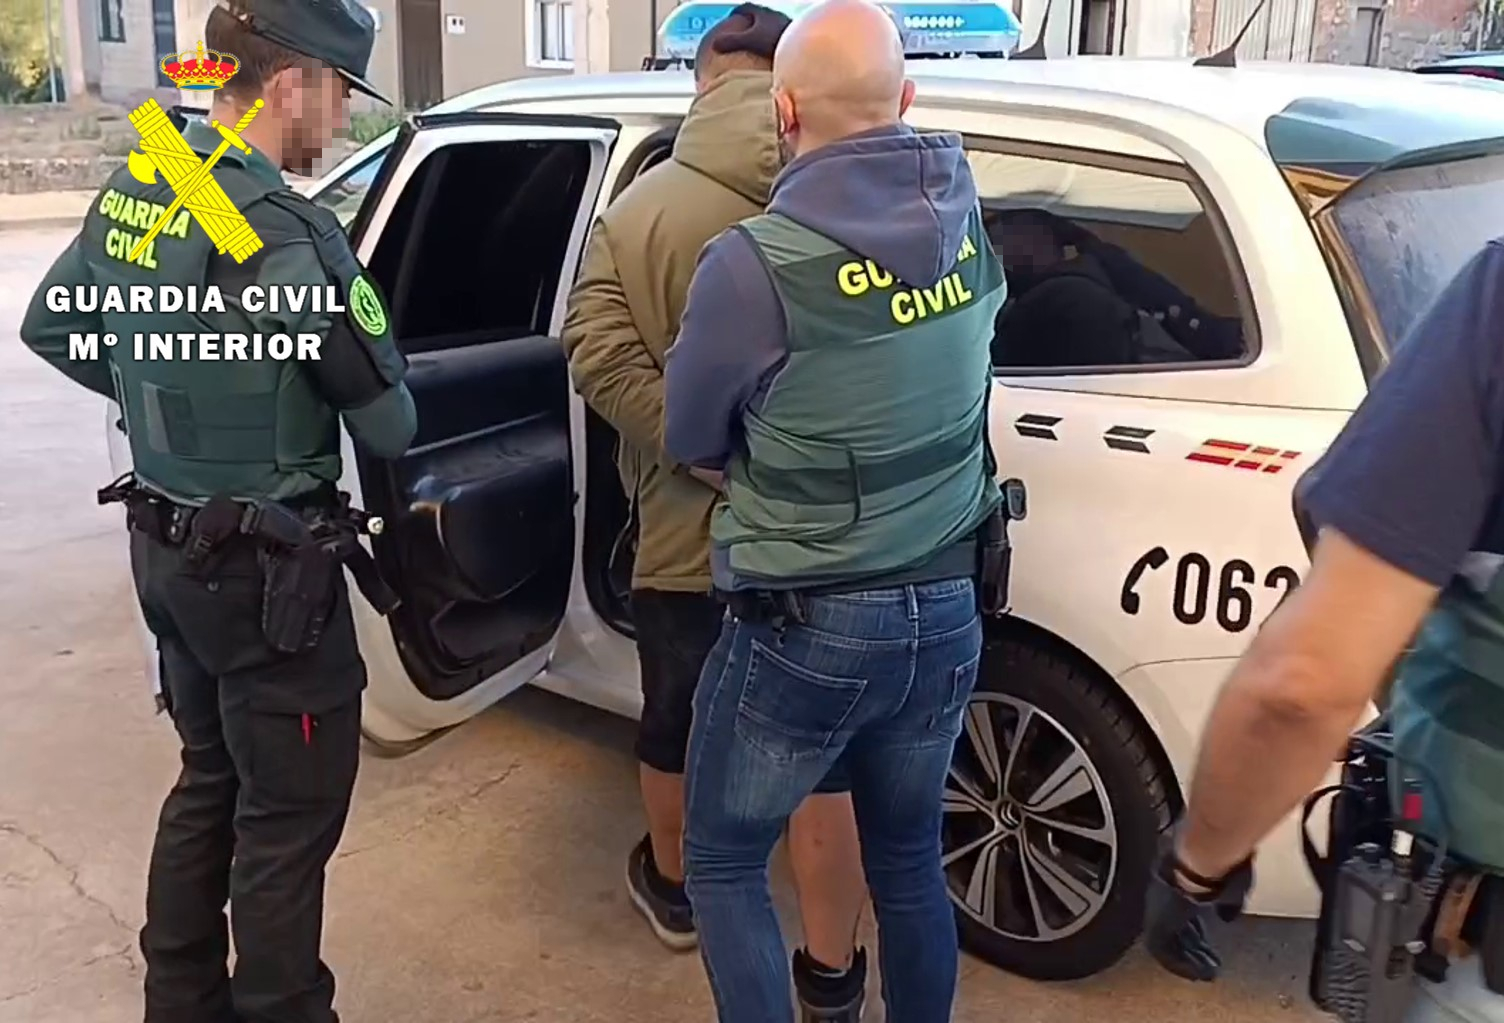 La Guardia Civil desarticula un grupo criminal dedicado al robo con fuerza en polígonos industriales